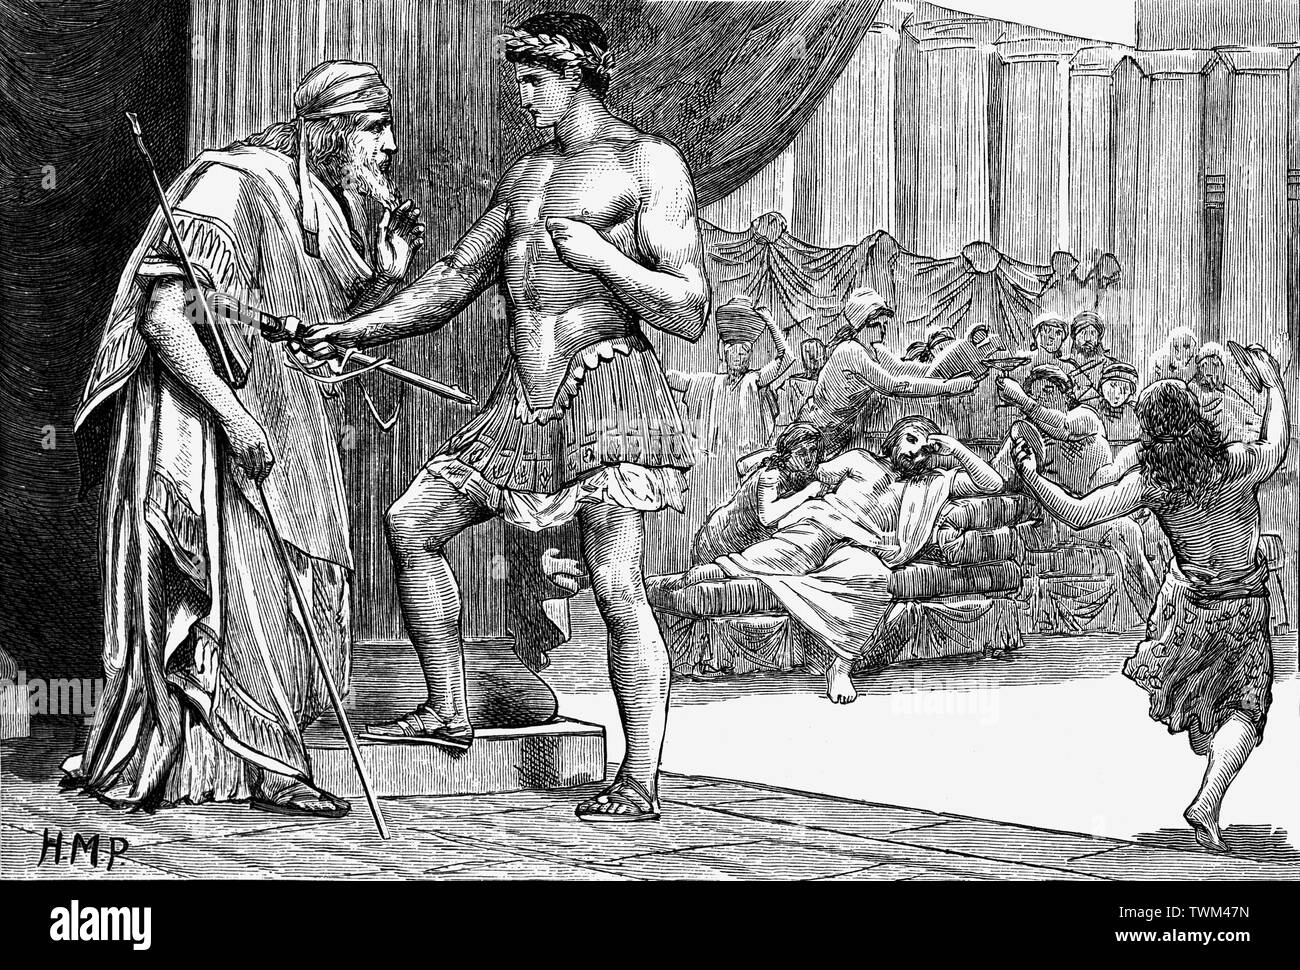 In der griechischen Mythologie, Aegeus war eine archaische Figur in der gründungsmythos von Athen, der seinen Namen auf das Ägäische Meer gab und hervorbringen Theseus, der mythische König und Gründer - Held von Athen. Theseus wurde auf der Insel Sphairia angehoben. Wenn Theseus wuchs und wurde zu einem tapferen jungen Mann, seine Mutter sagte ihm dann die Identität seines Vaters und nahm die Schwerter zurück zu König Aegeus sein Geburtsrecht in Anspruch zu nehmen. Stockfoto